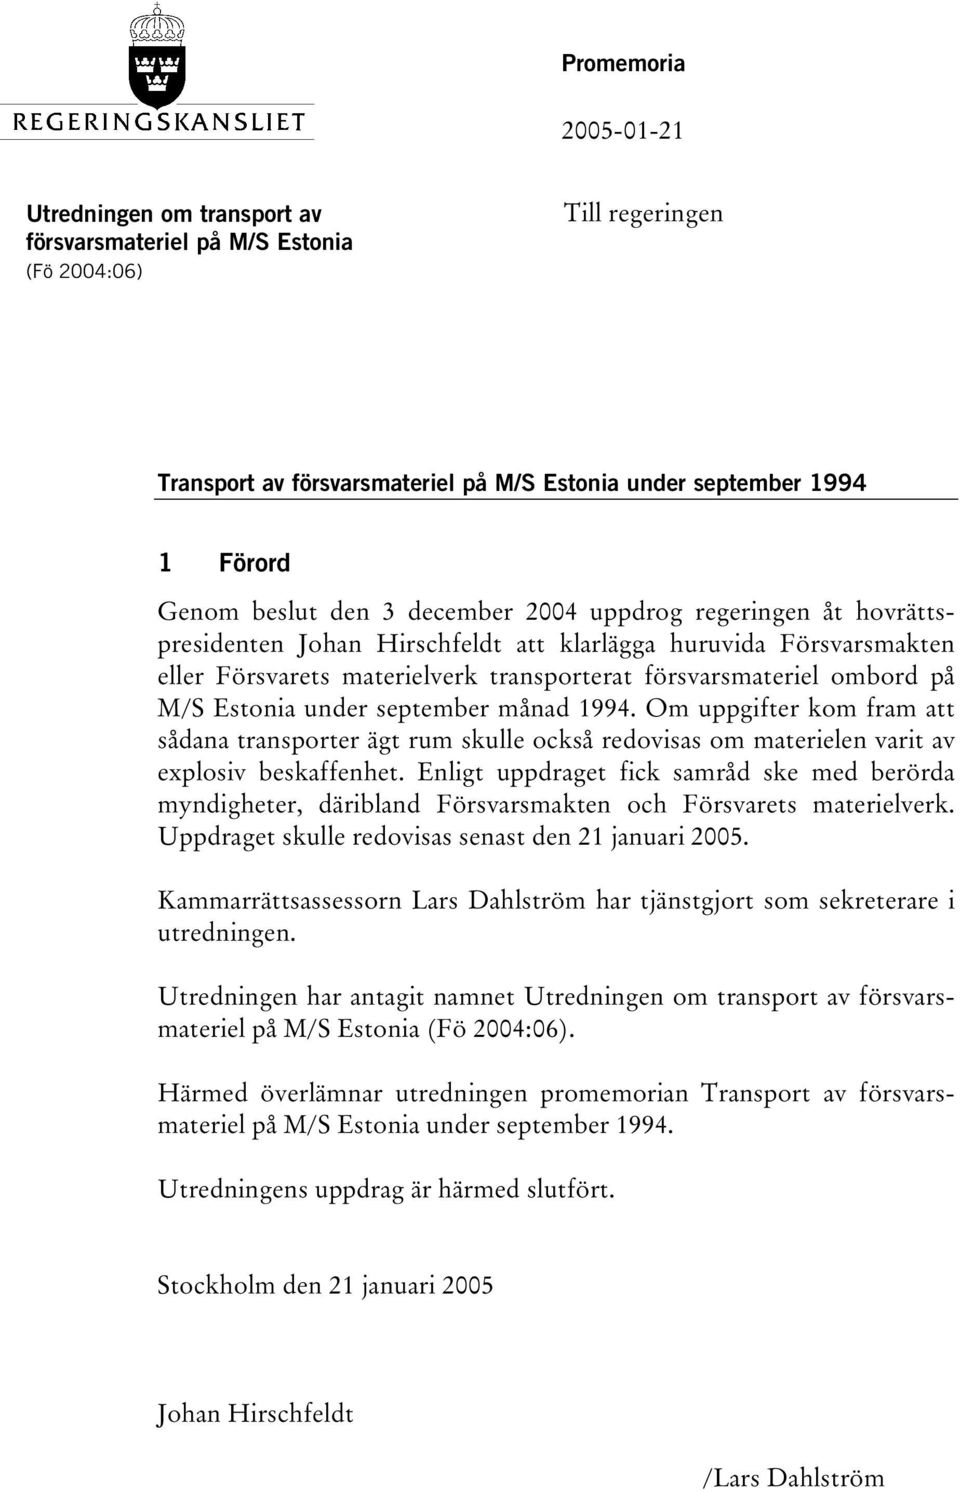 Estonia under september månad 1994. Om uppgifter kom fram att sådana transporter ägt rum skulle också redovisas om materielen varit av explosiv beskaffenhet.